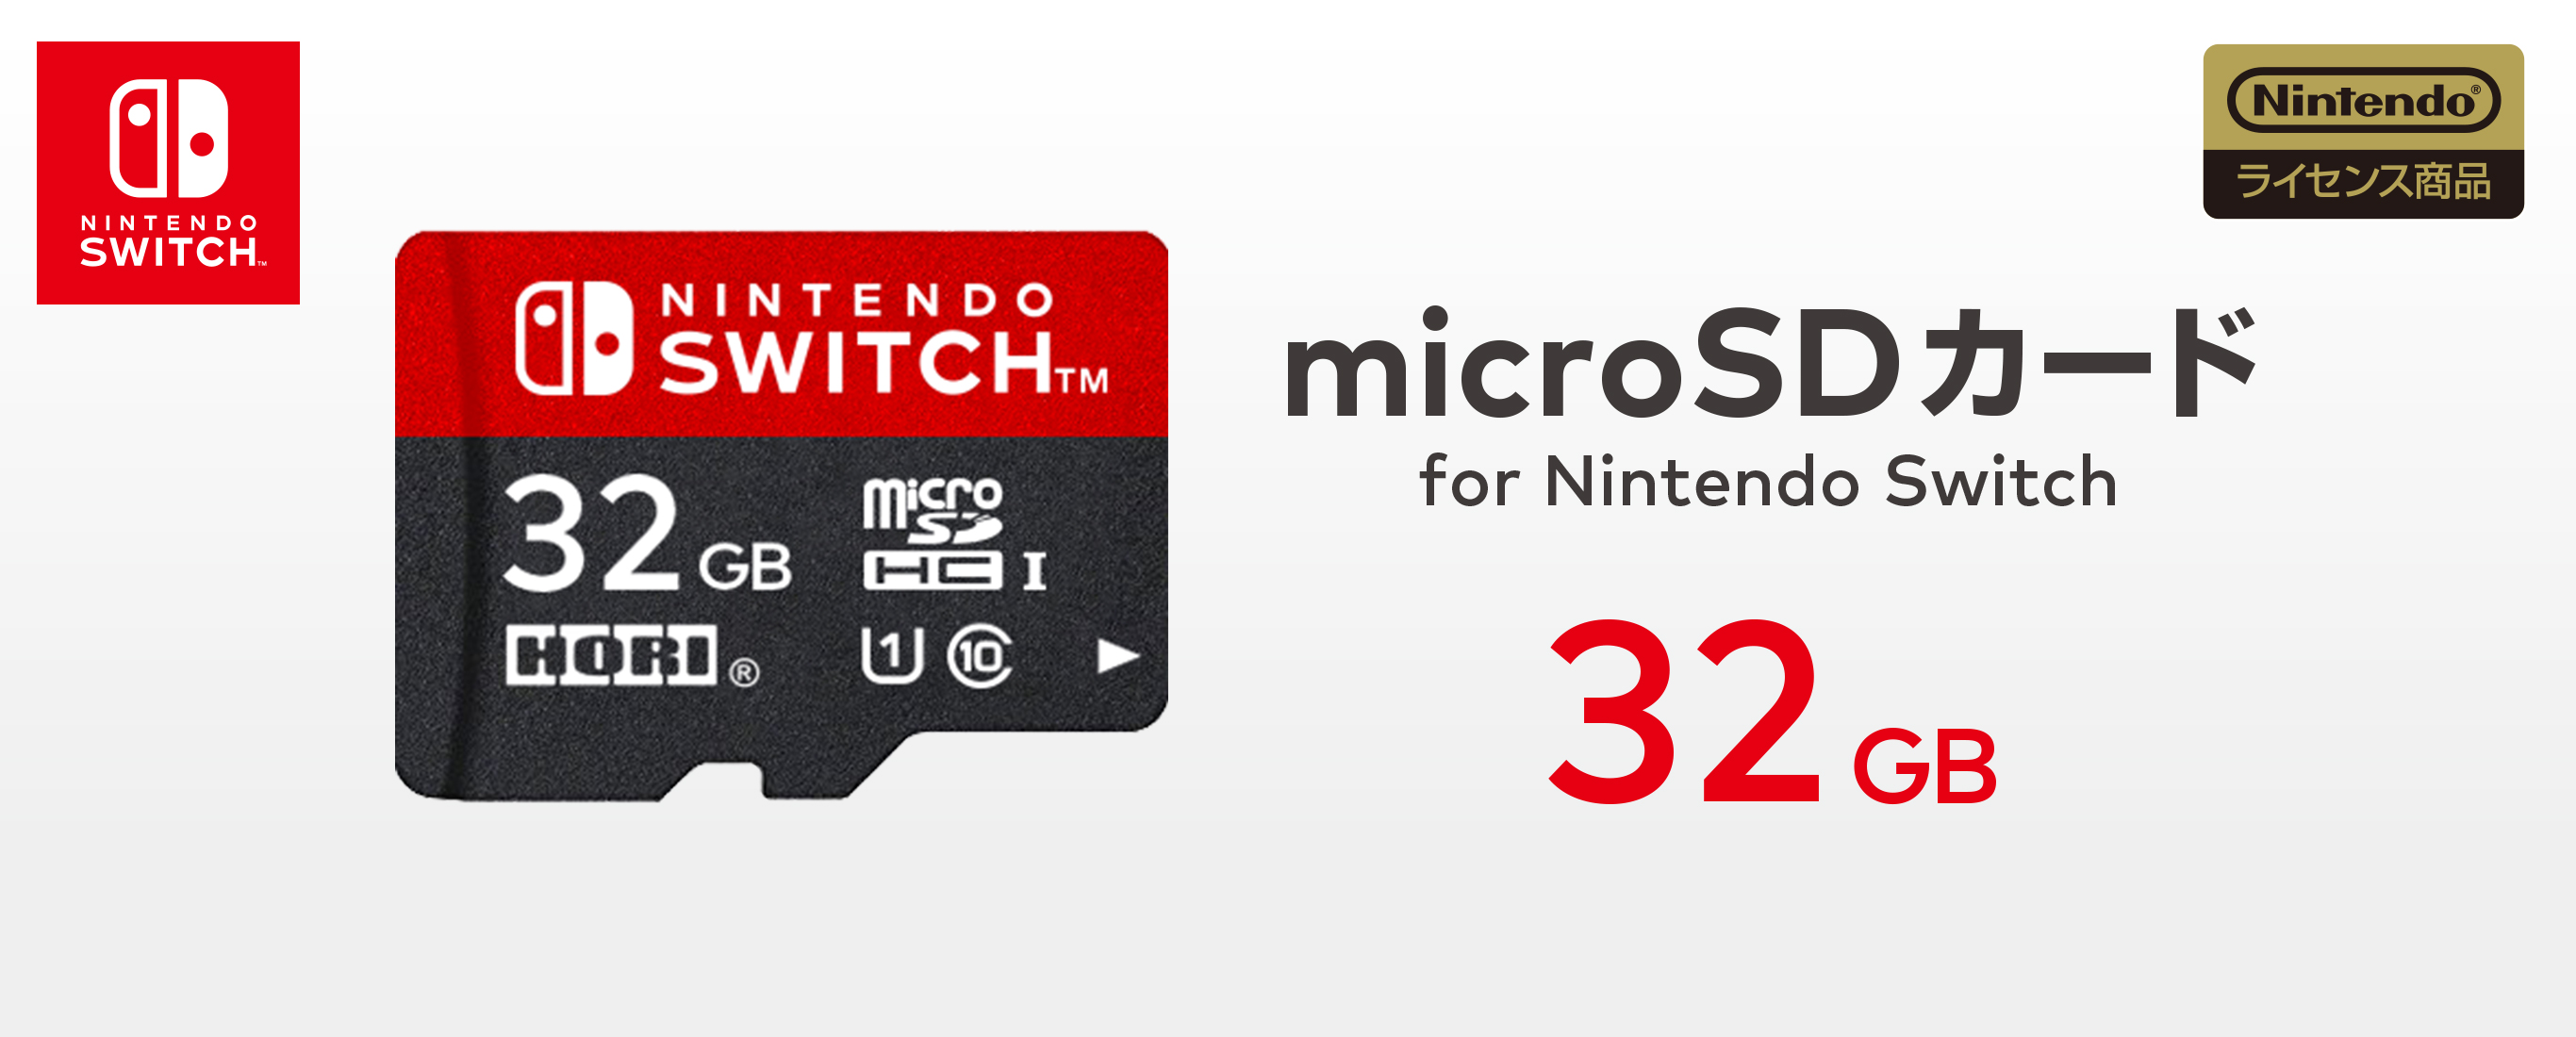 株式会社 Hori Microsdカード For Nintendo Switch 32gb